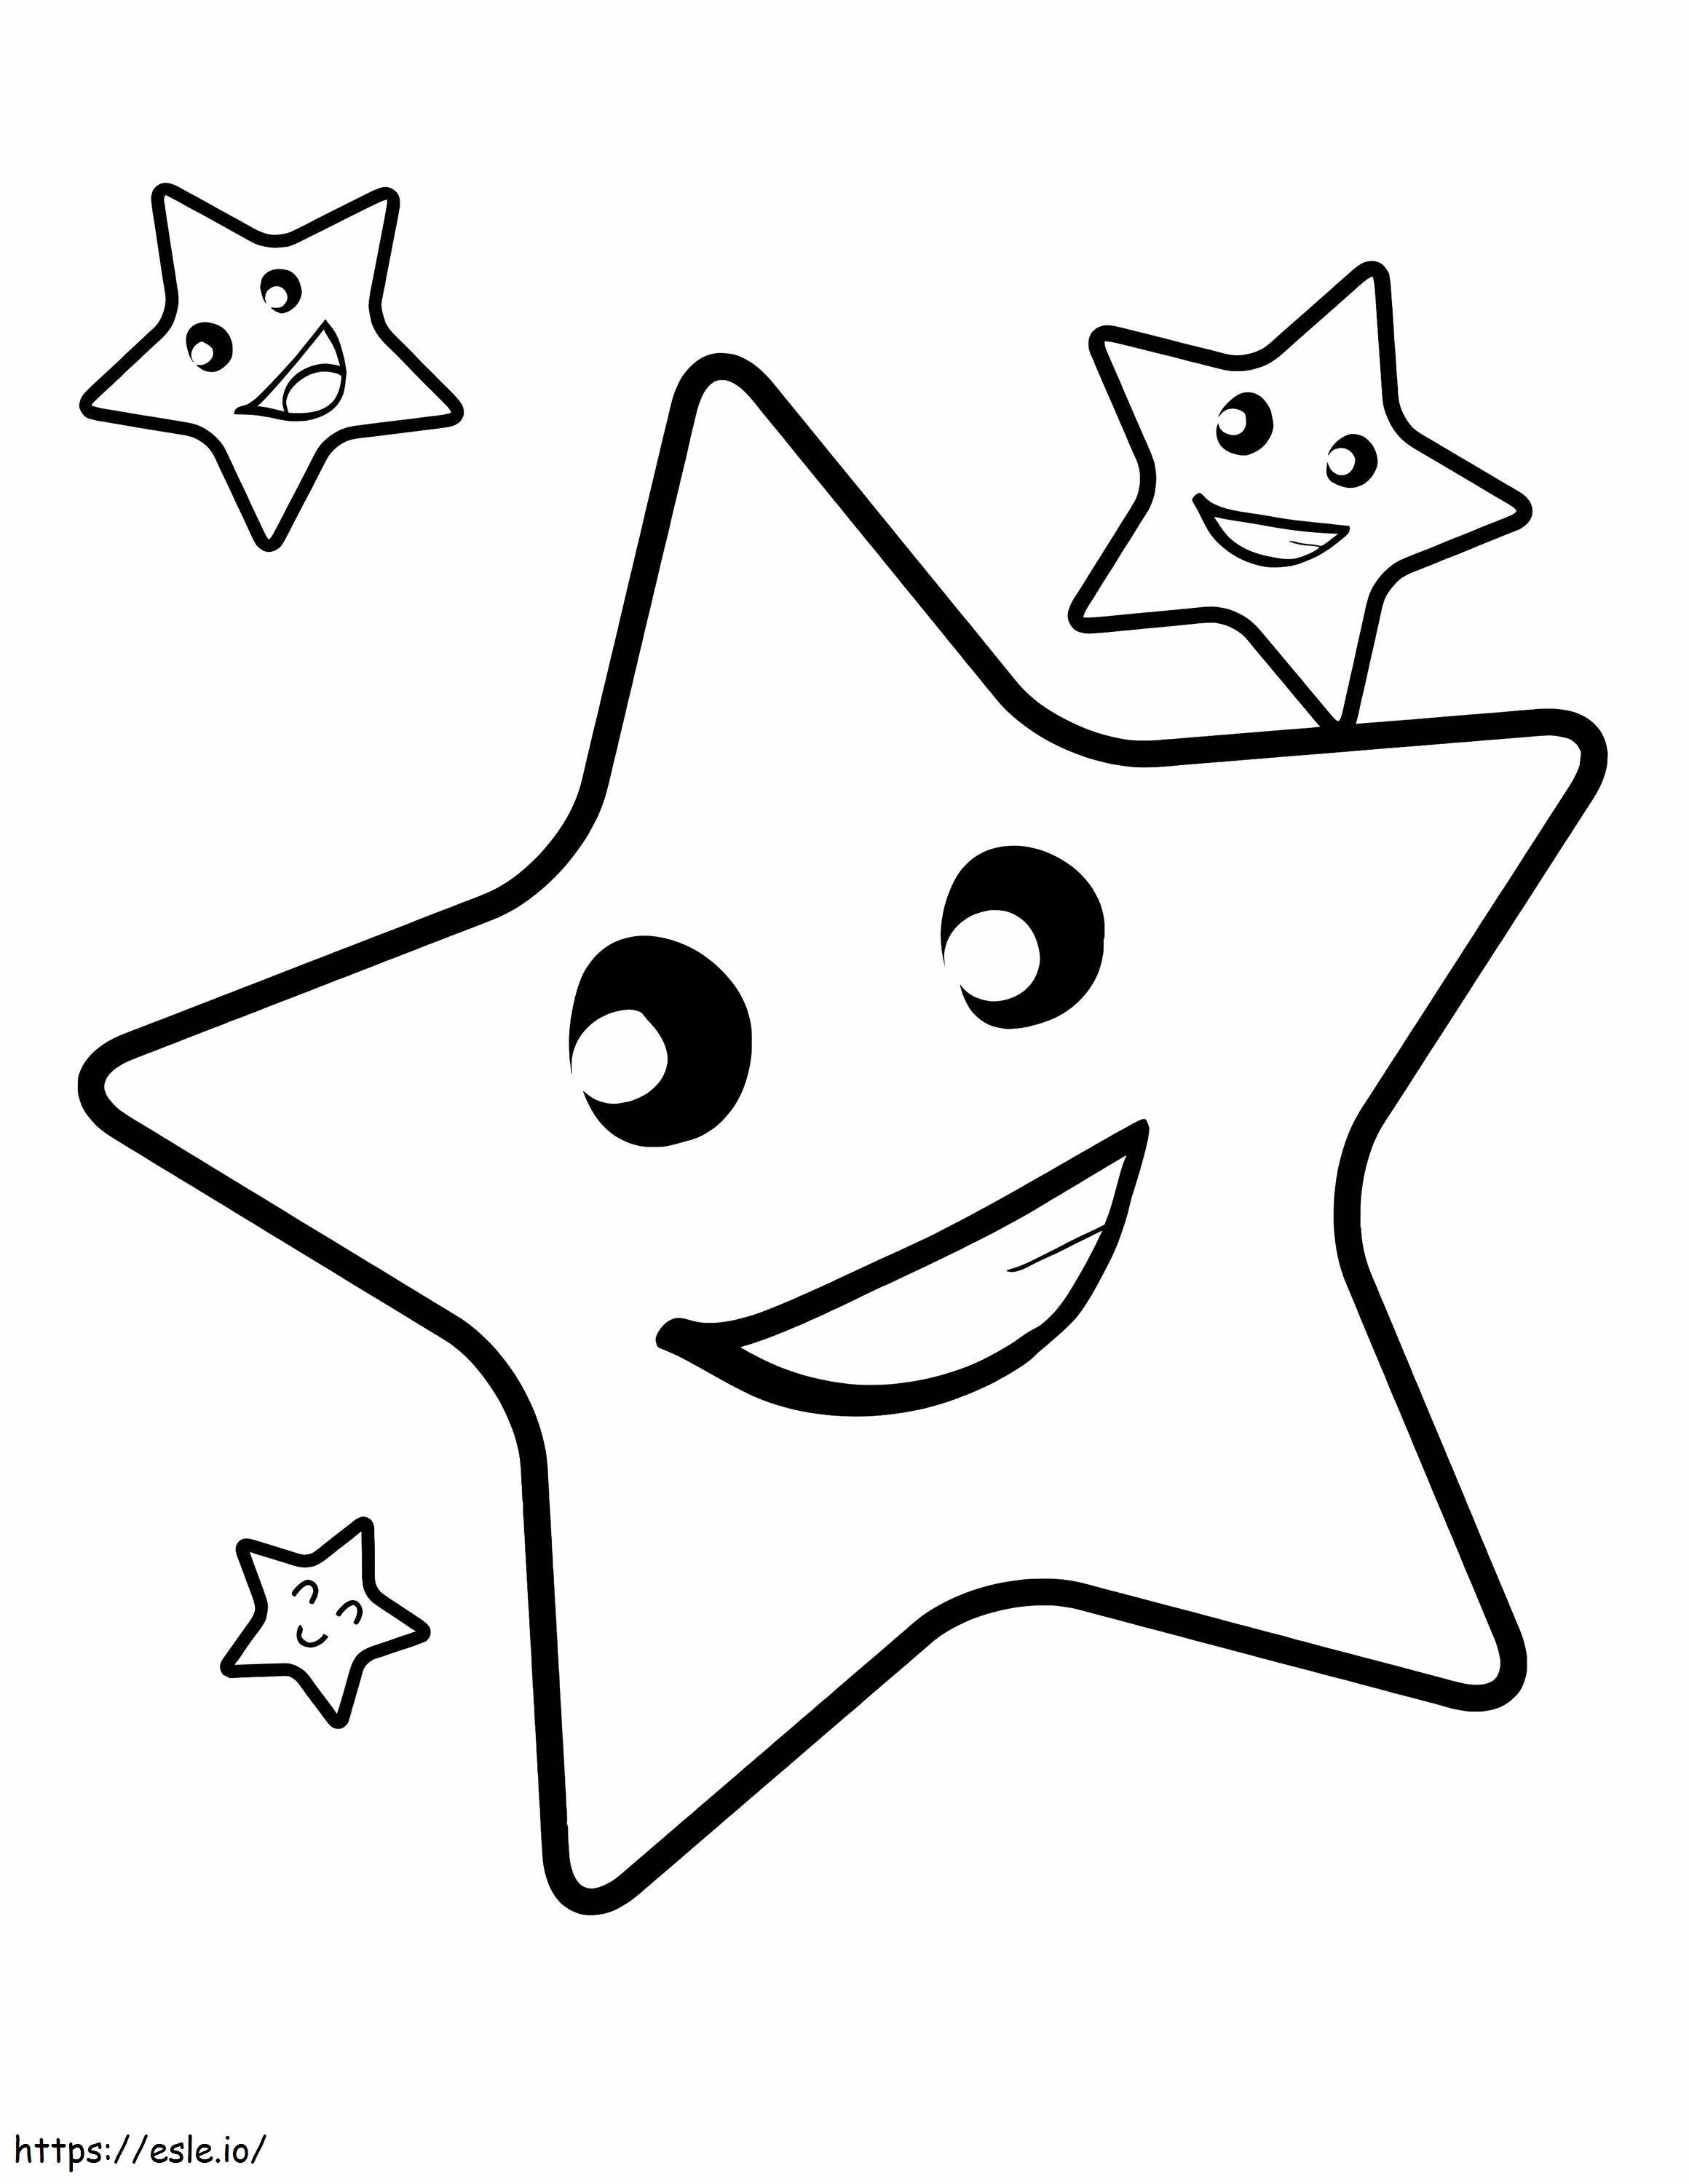 Vier lustige Sterne ausmalbilder